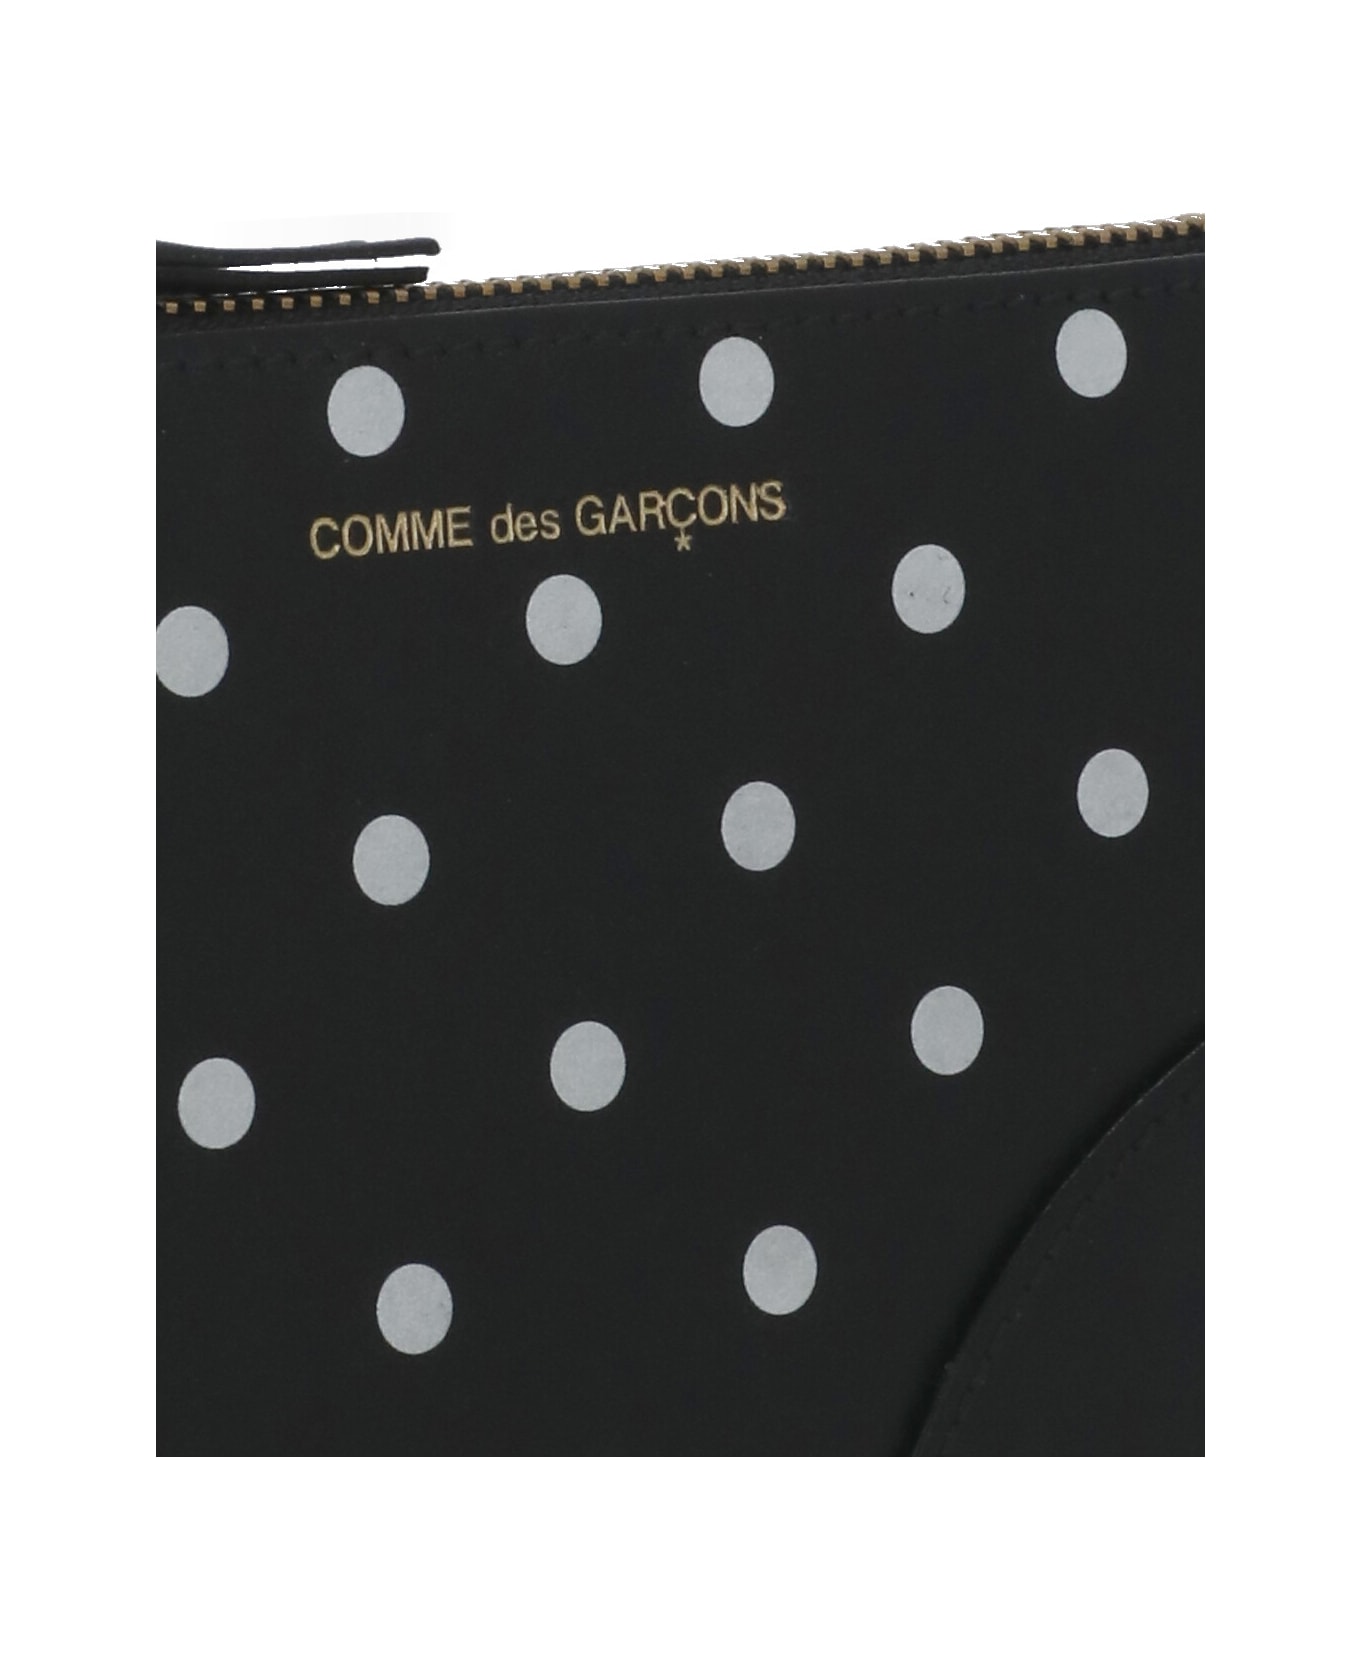 Comme des Garçons Wallet Wallet With Logo - Black 財布